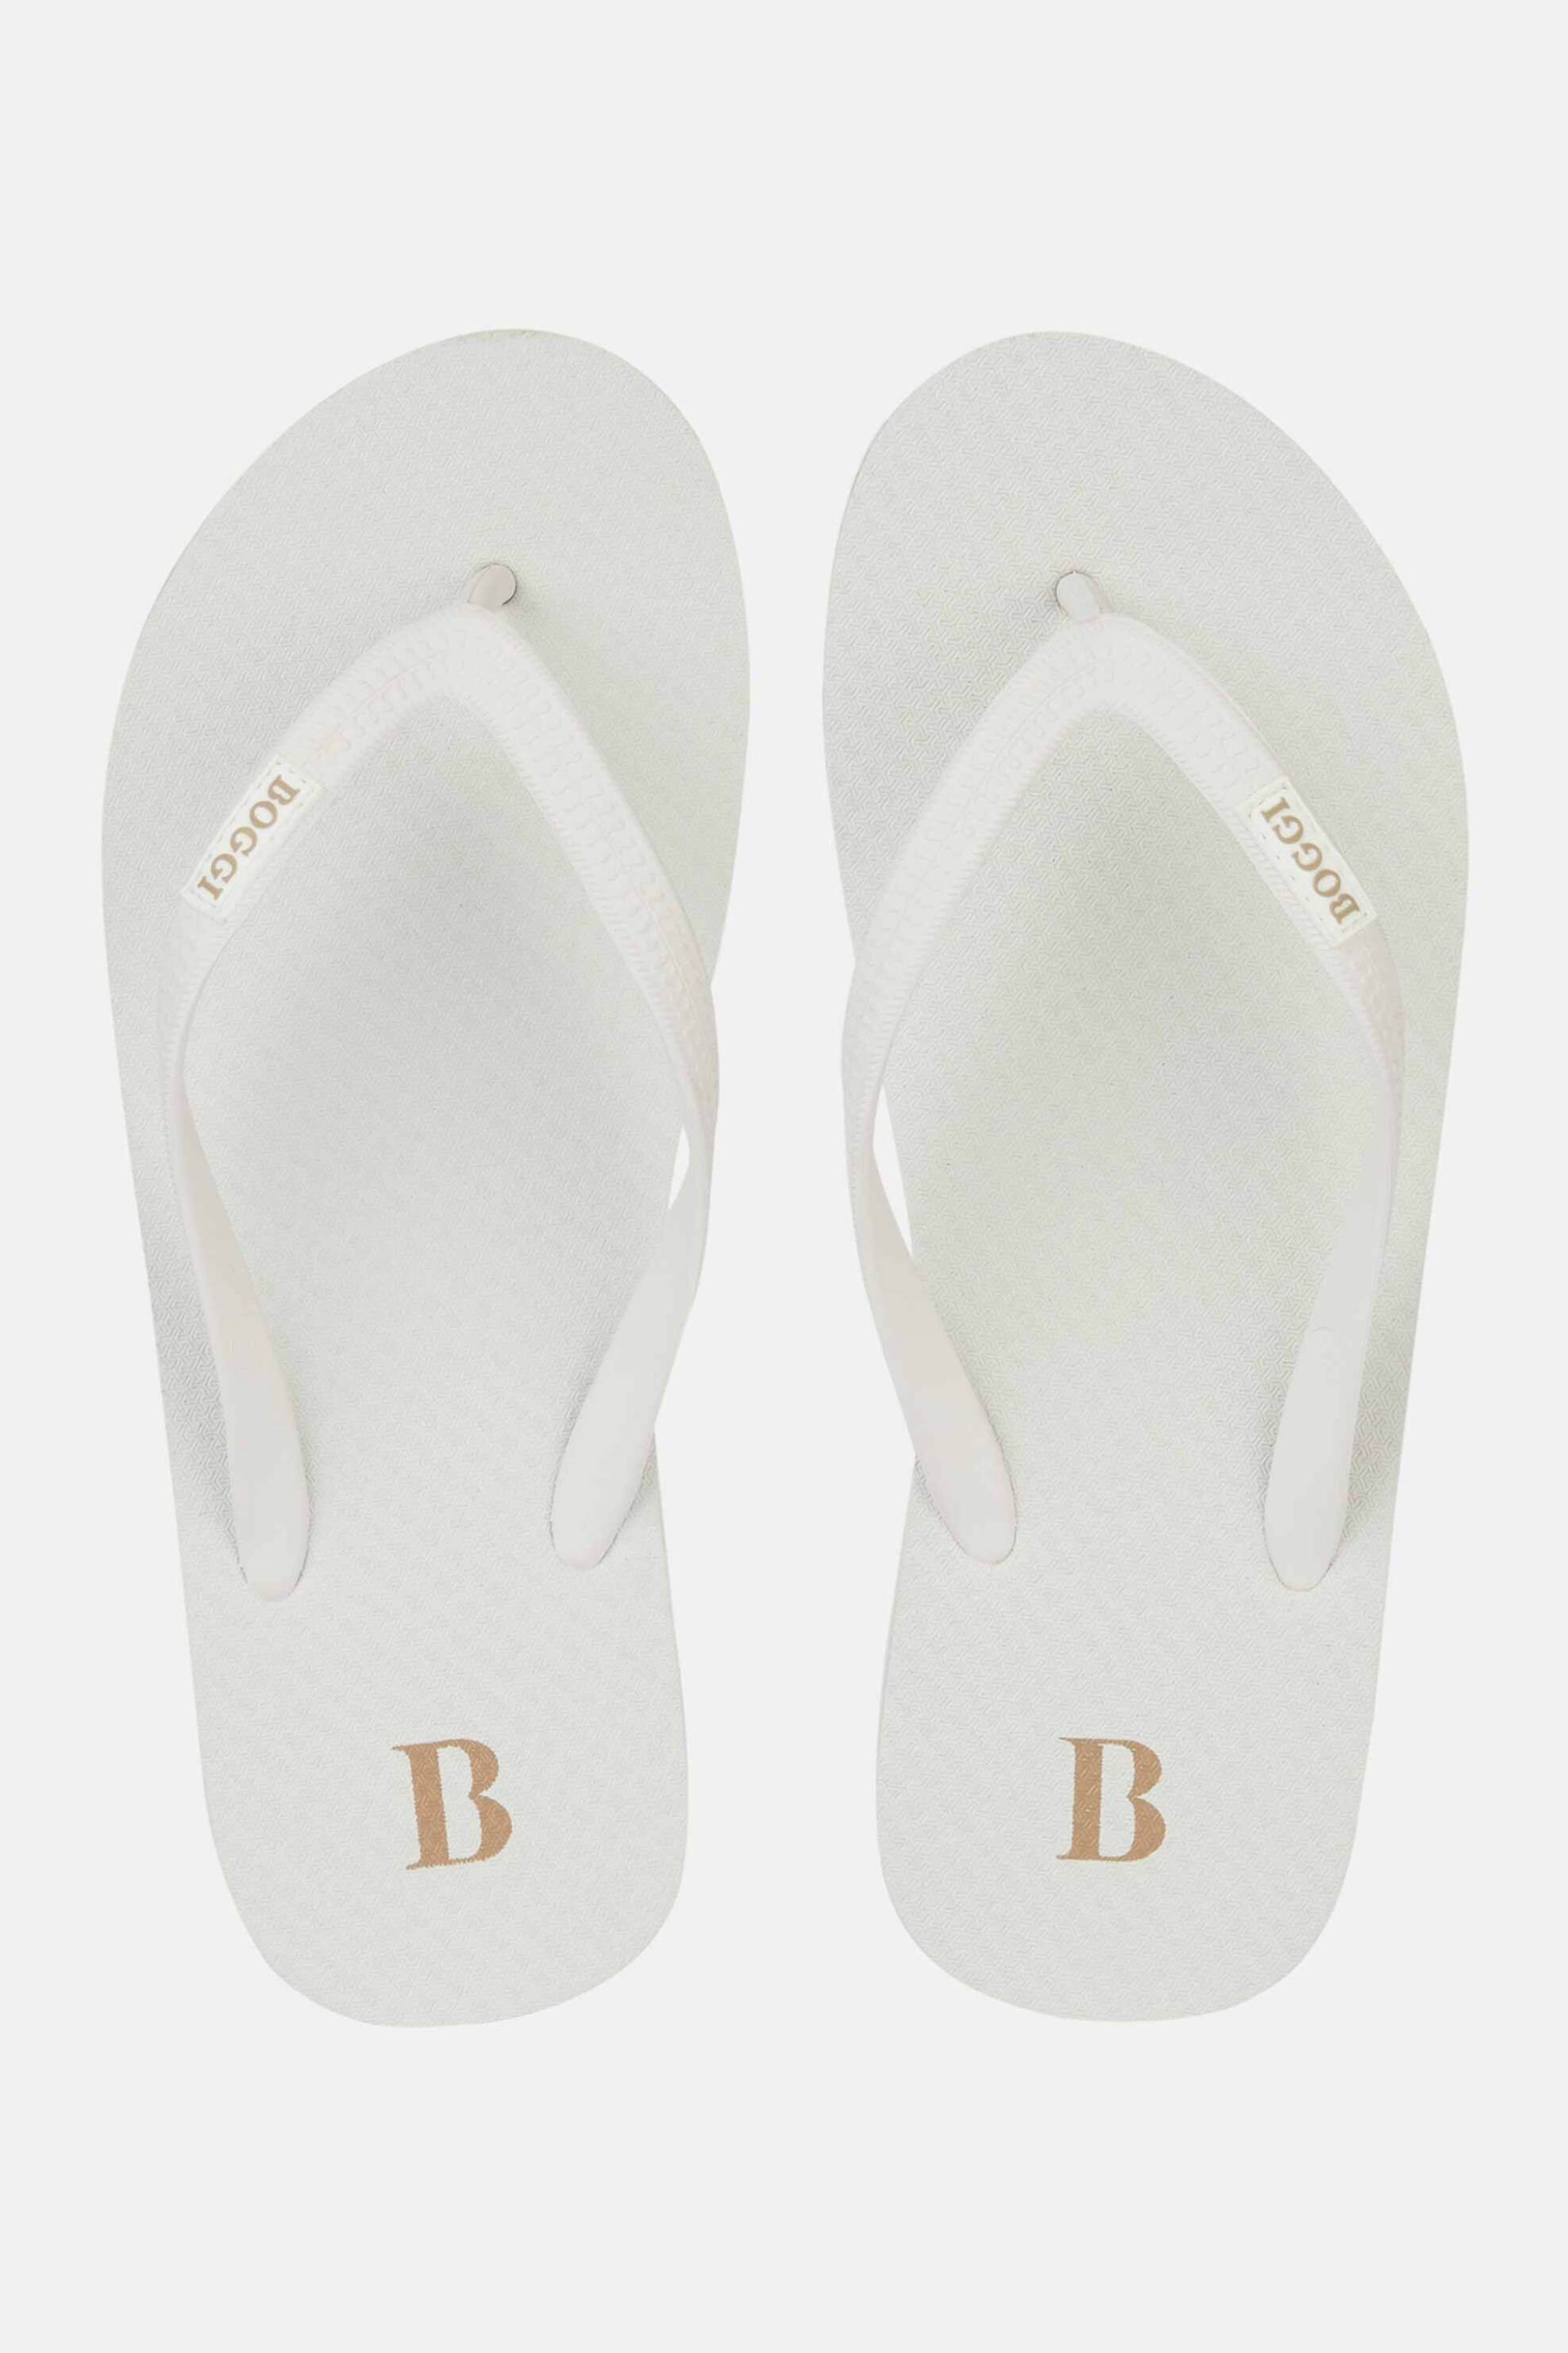 Ανδρική Μόδα > Ανδρικά Παπούτσια > Ανδρικές Παντόφλες & Σαγιονάρες Boggi Milano ανδρικές σαγιονάρες με λογότυπο - BO24P046101 Λευκό